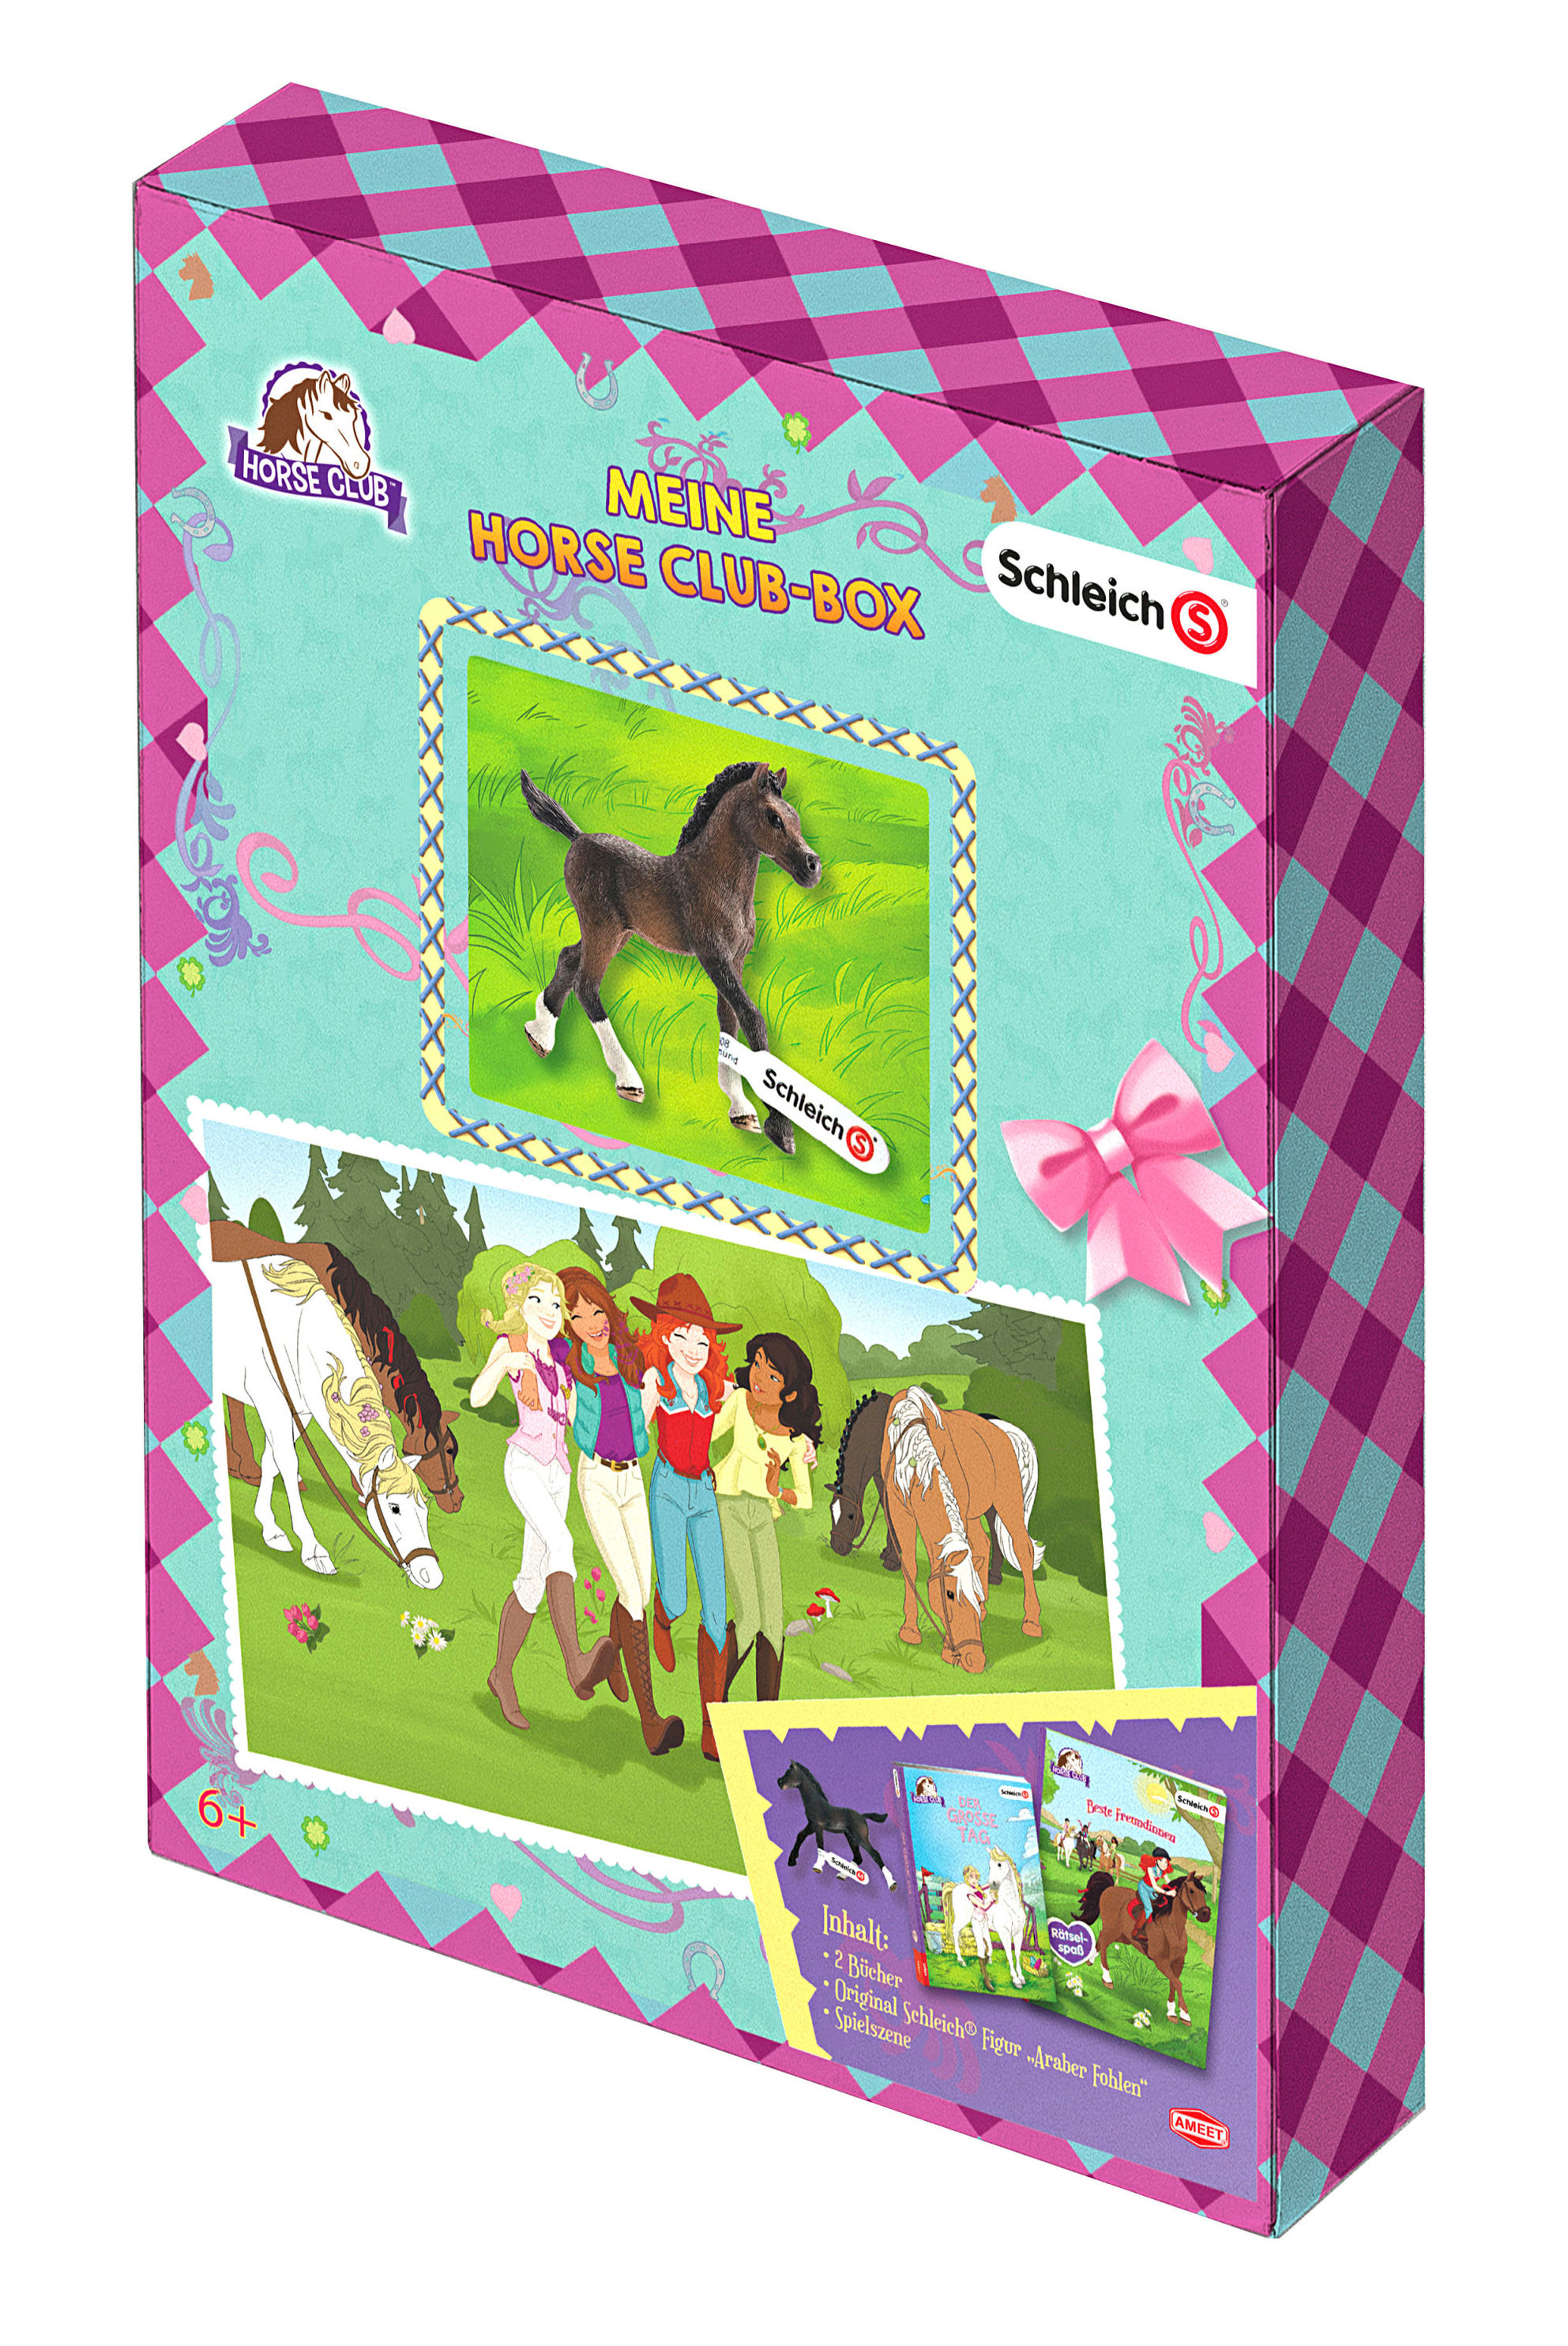 SCHLEICH® Horse Club TM - Meine Horse-Club-Box, m. Minifigur Buch  versandkostenfrei bei Weltbild.ch bestellen